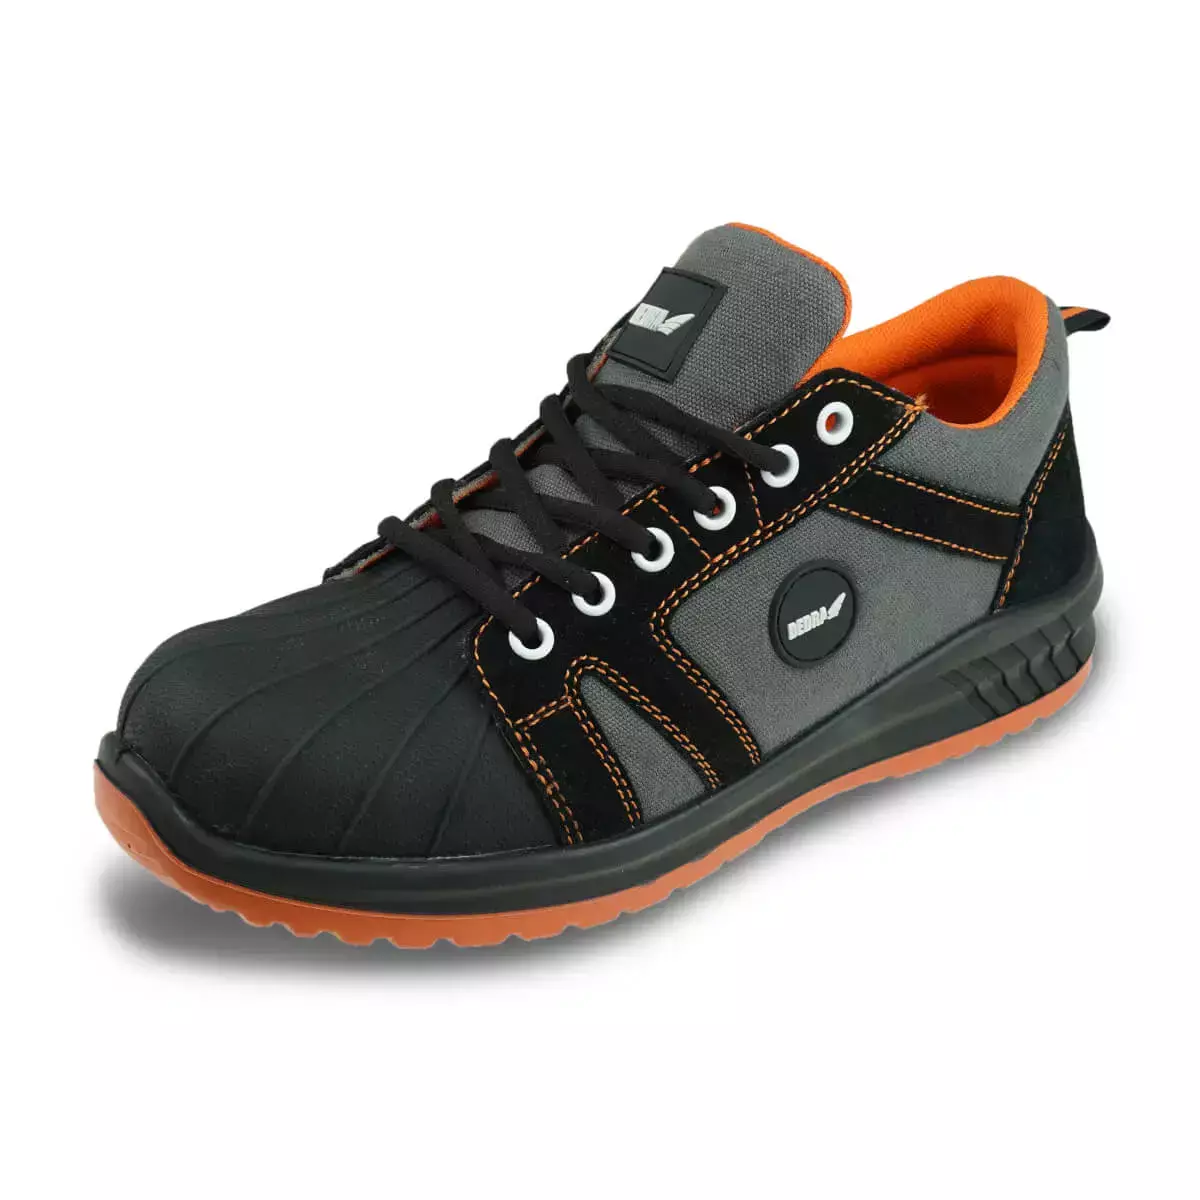 Pantofi de protectie M6 DEDRA, cat. S1 SRC, 200J, gri negru 200J